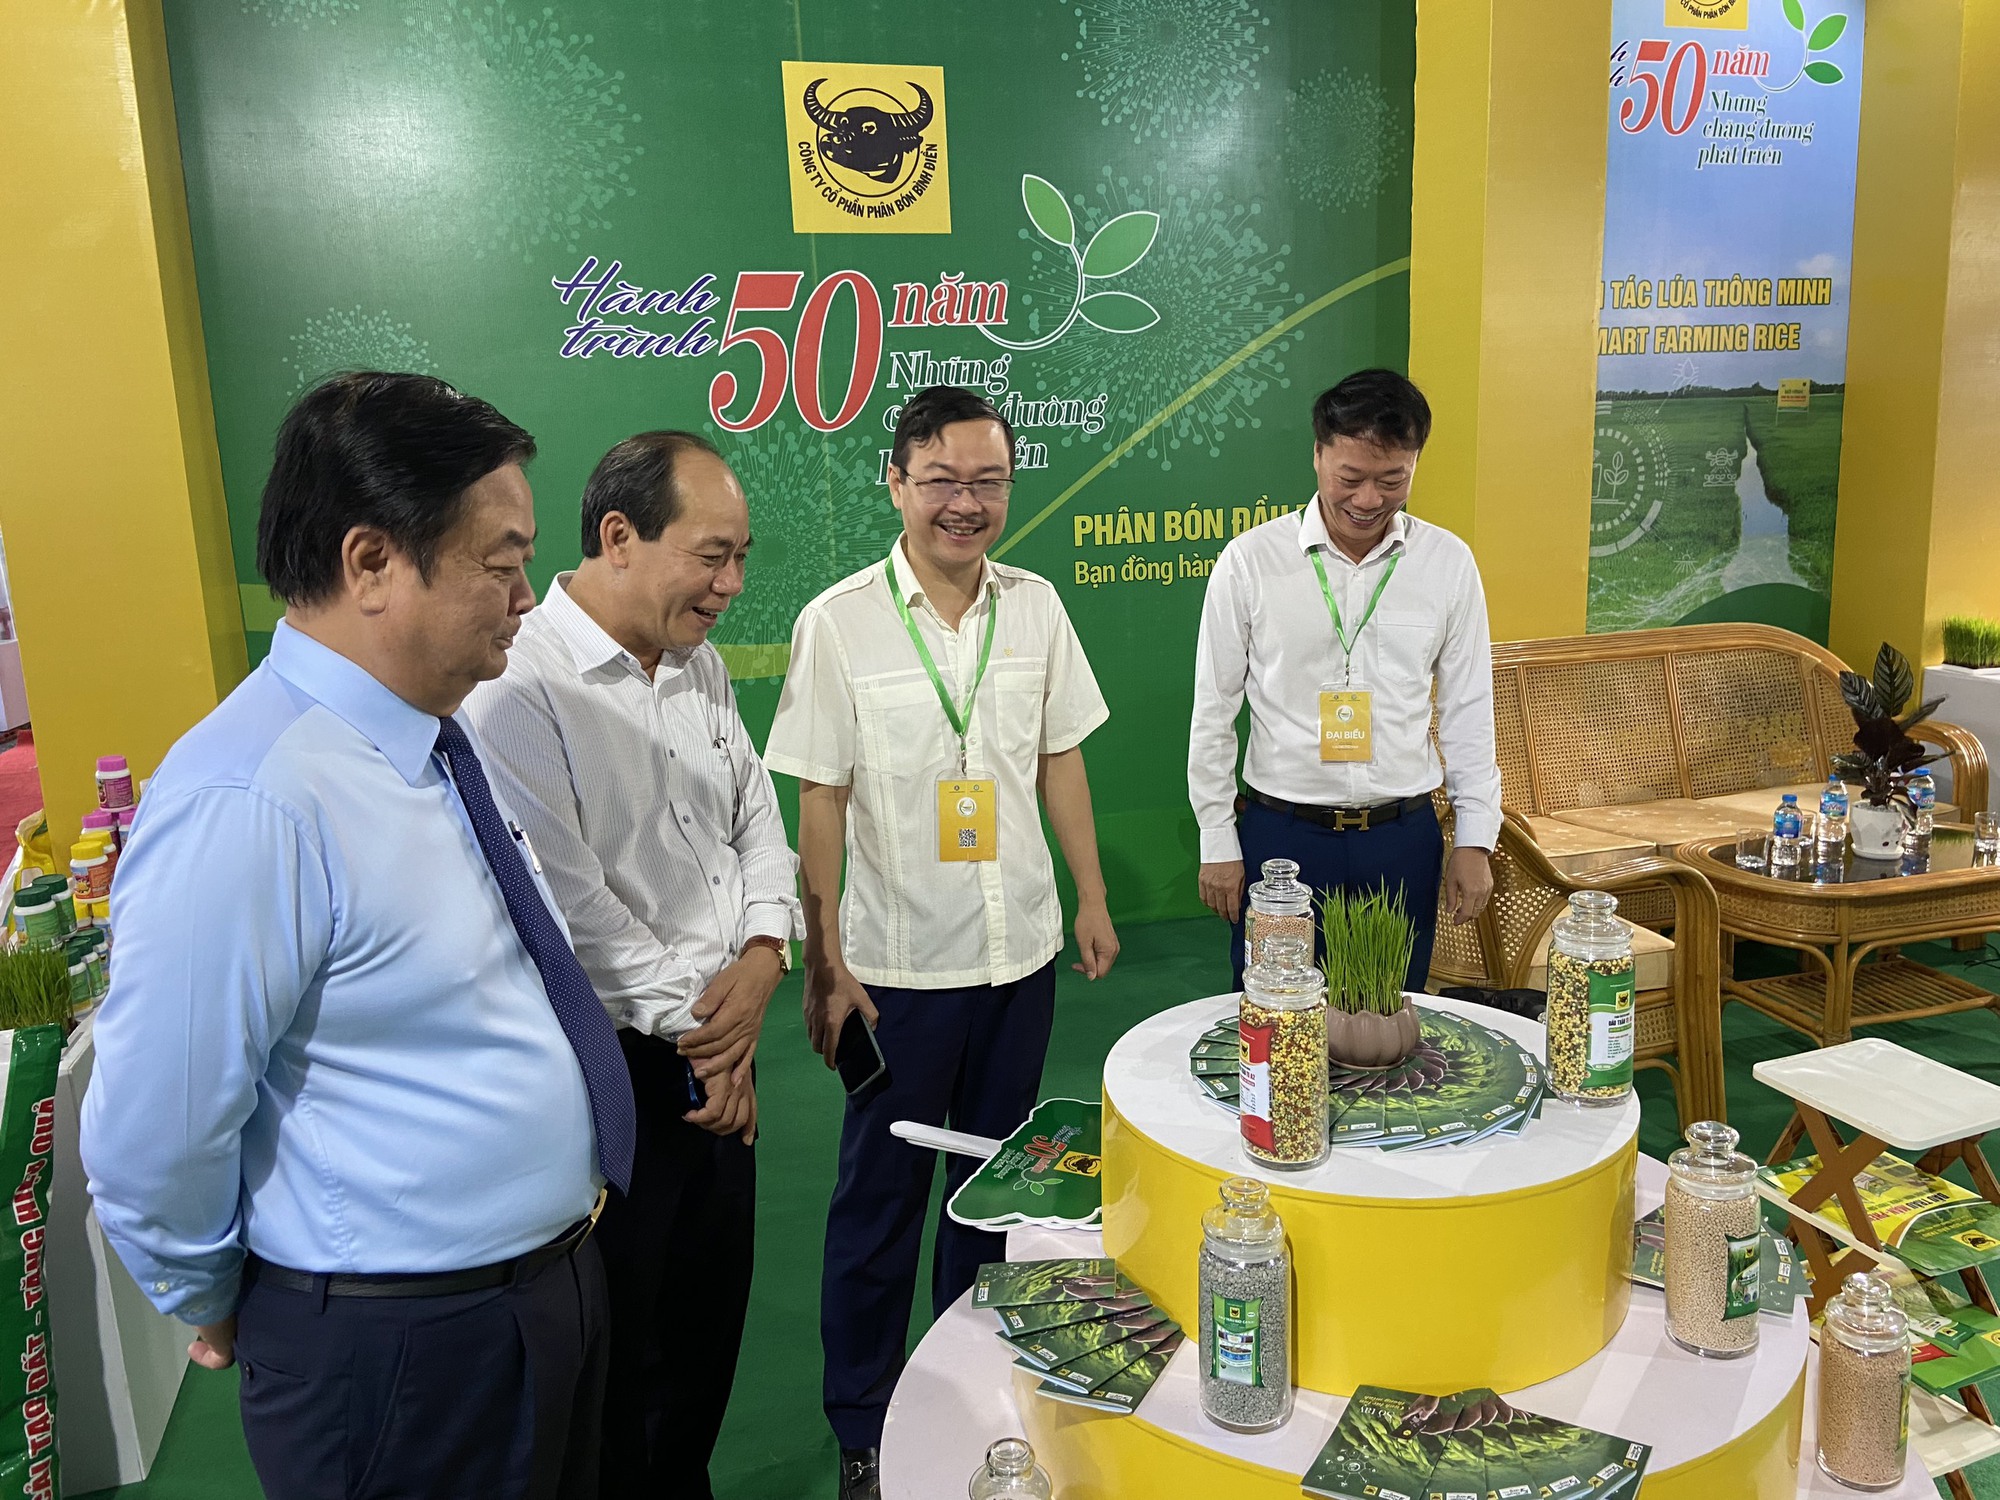 Bình Điền đóng góp ý tưởng cho đề án một triệu ha chuyên canh lúa chất lượng cao - Ảnh 8.